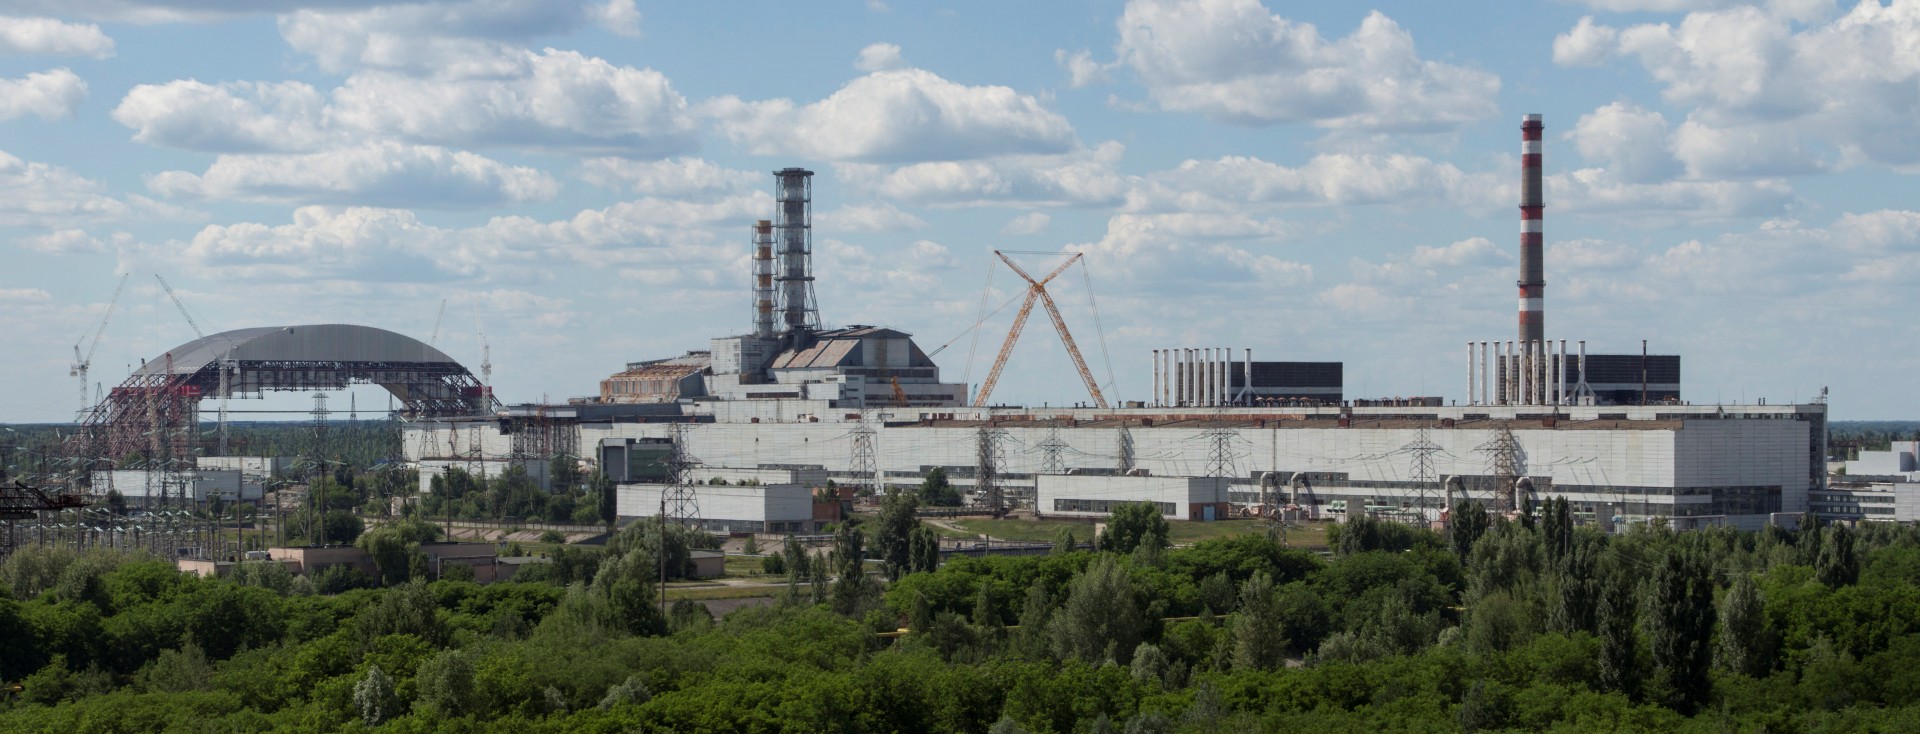 Centrale de Tchernobyl - Chernobyl - Arche de confinement - Juin 2013 - Chantier -  réacteur n°4 - Sarcophage - Ingmar Runge - Wikipedia Commons- Ukraine